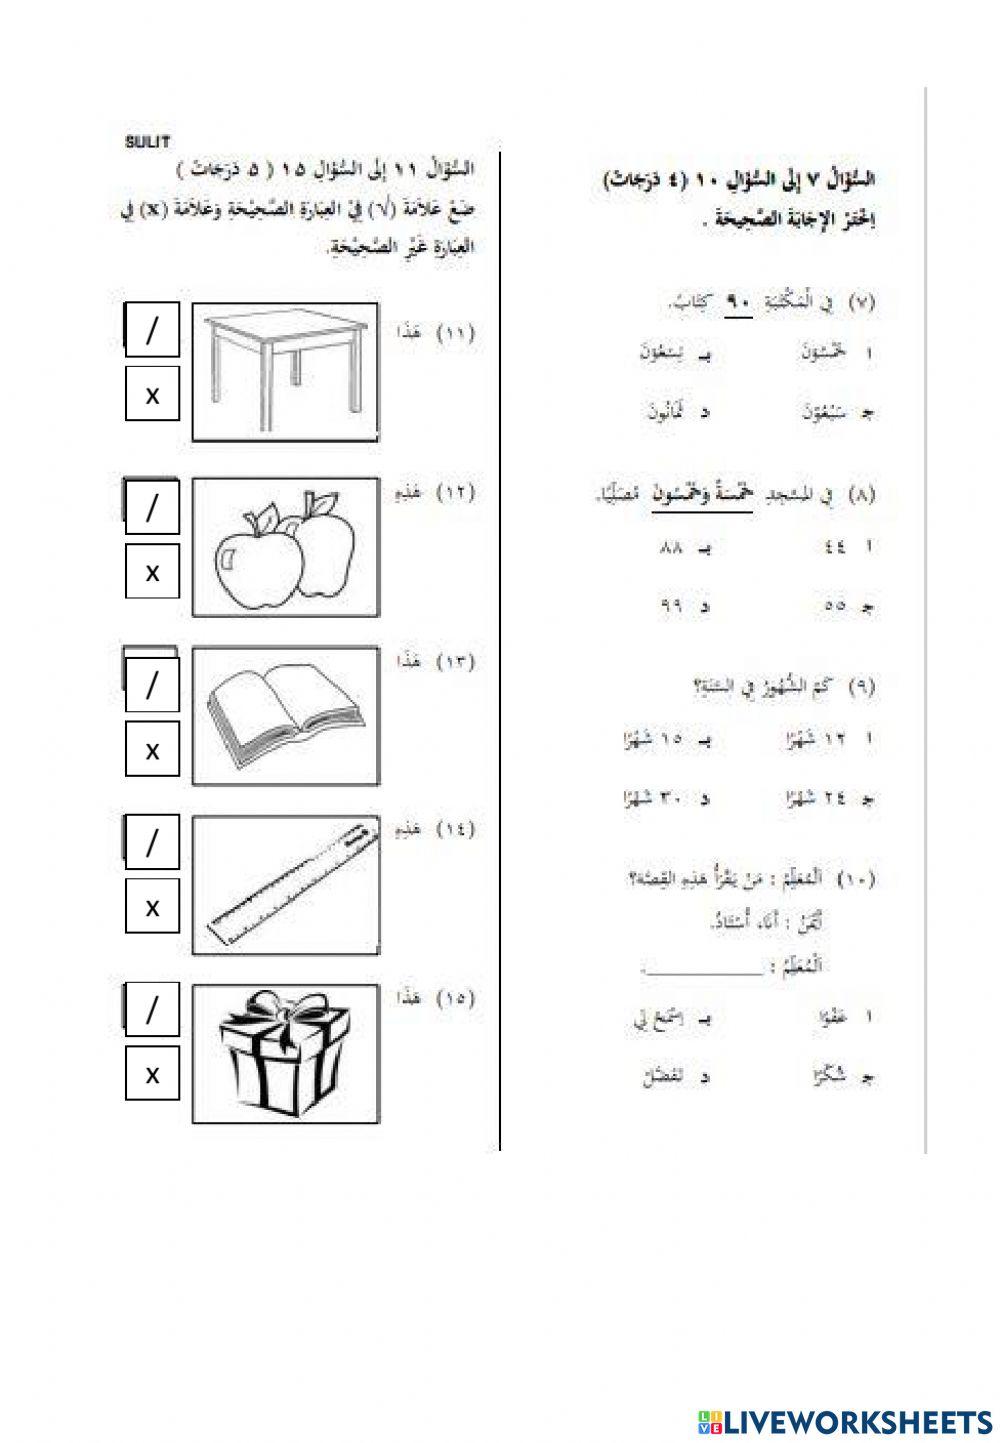 Ulangkaji bahasa arab